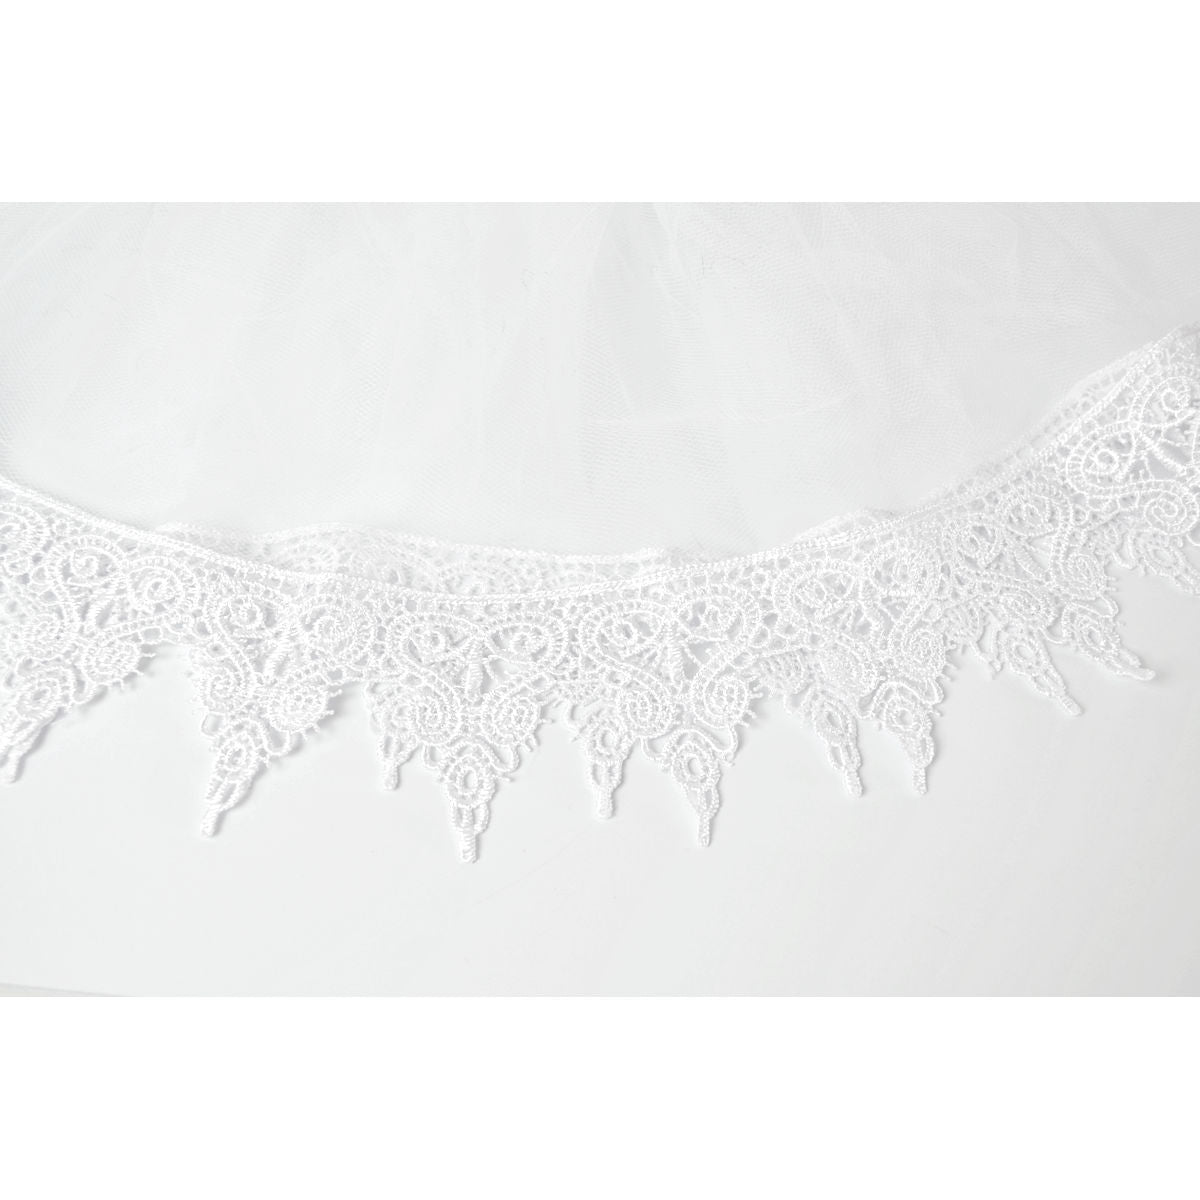 White Petticoat Angel Lace Edged Crinoline Women's Costume Accessory